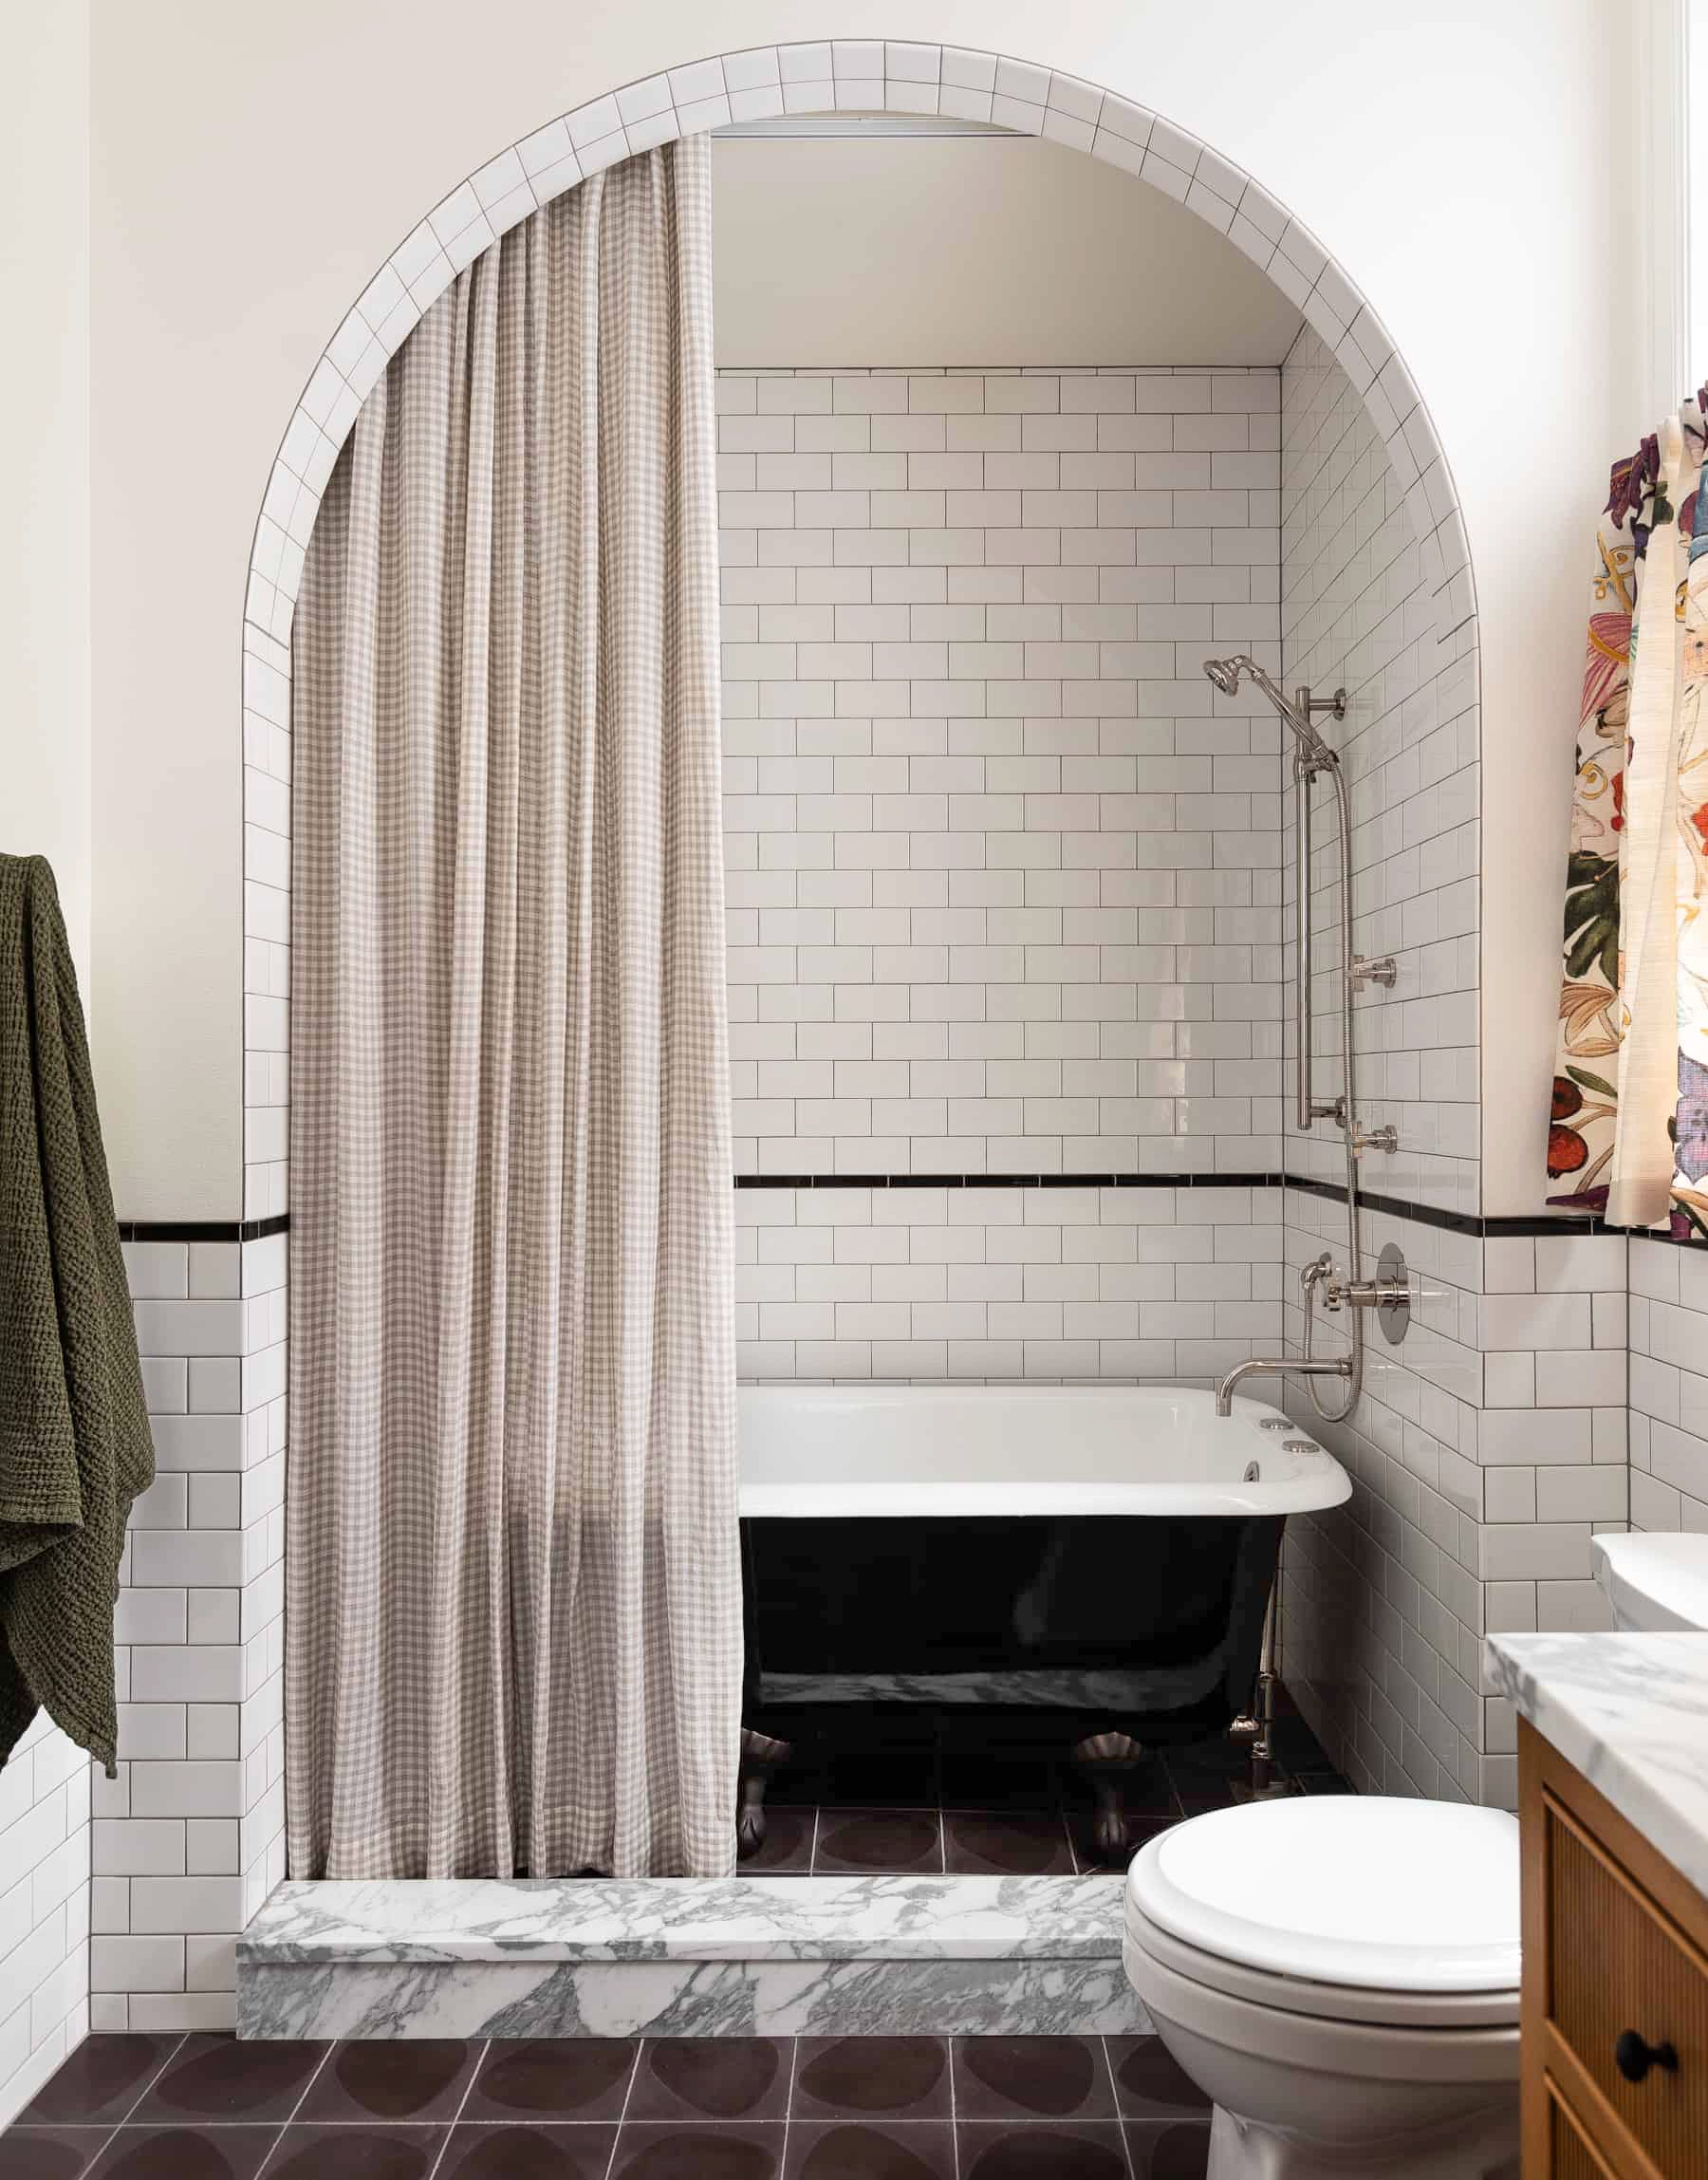 55 Bathroom Tile Ideas Bath, Bathroom Tiles Designs And Colors